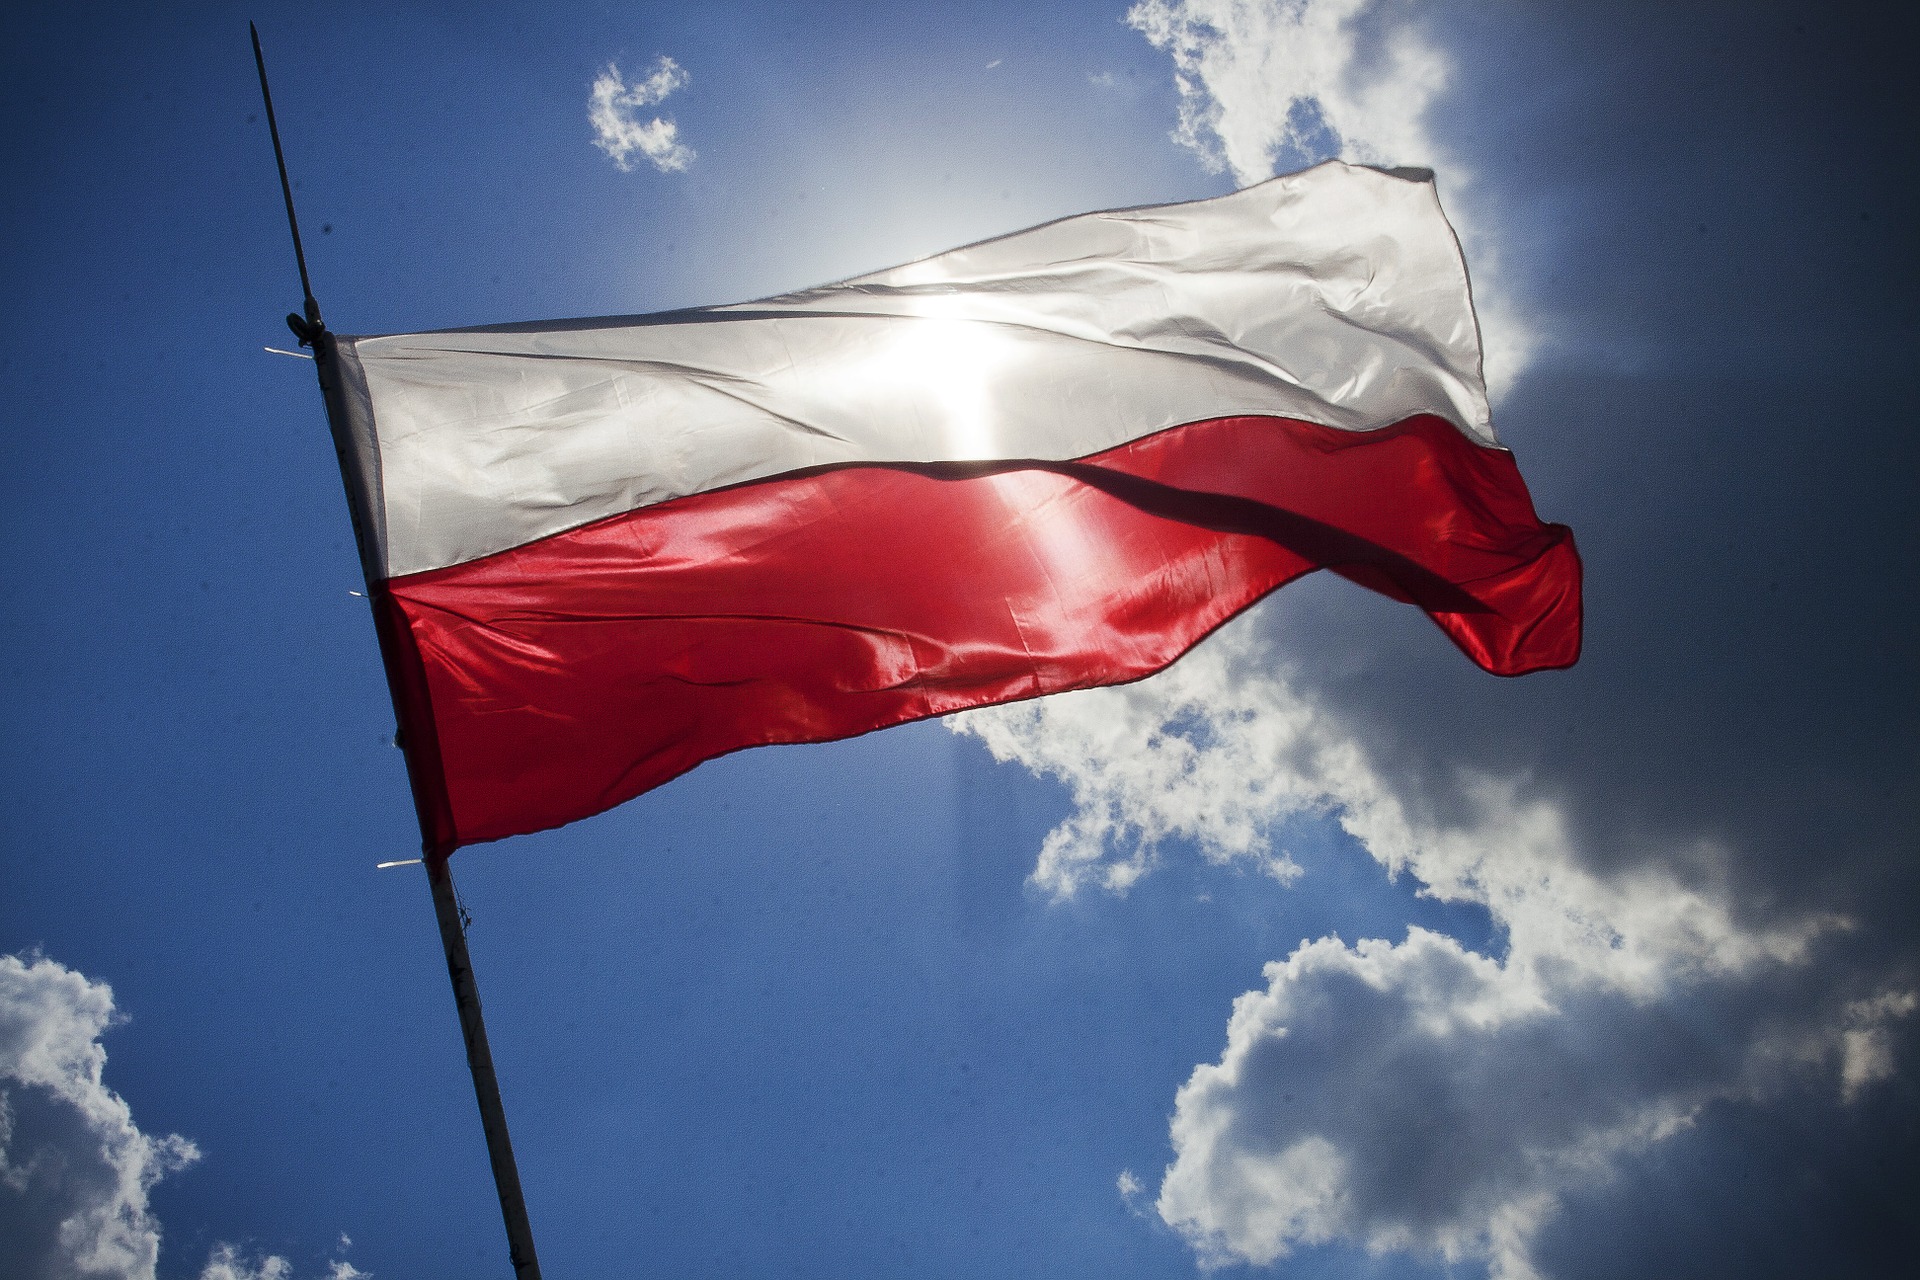 Polonia cere Germaniei peste 1.300 de miliarde de euro reparaţii de război